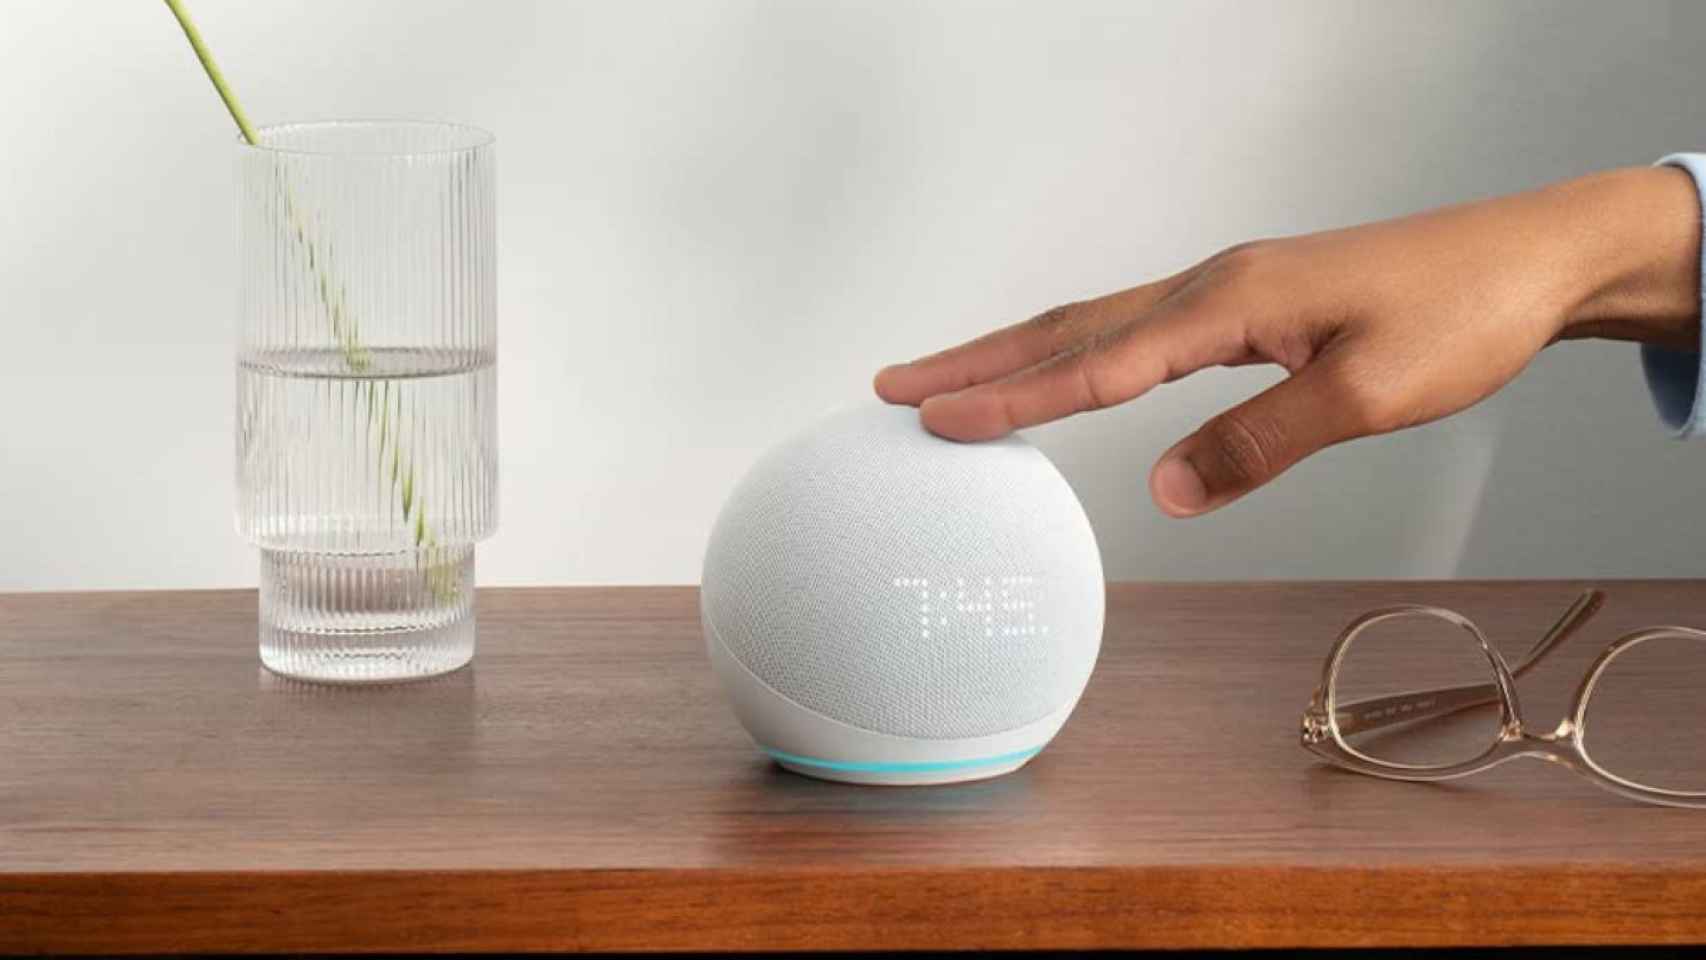 El mejor altavoz inteligente Echo Dot con Alexa ahora con este increíble descuento